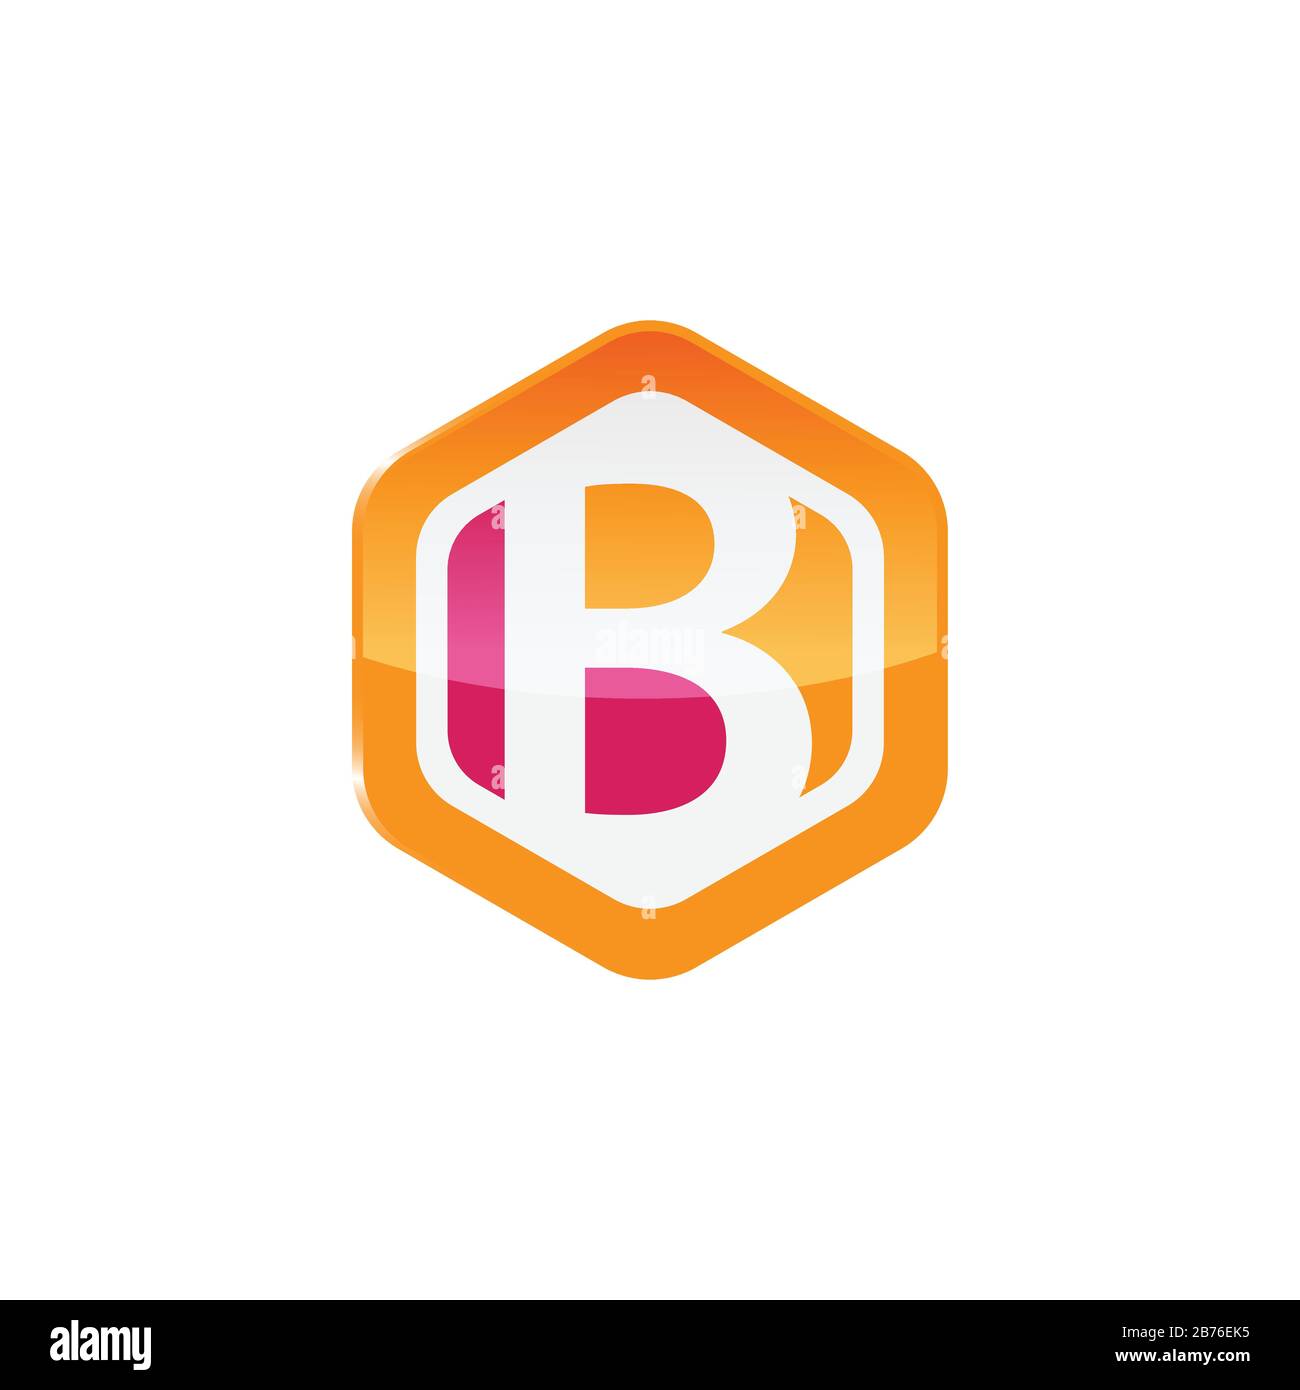 Immagine vettoriale Colorata del modello con icona del logo B con lettera esagonale Illustrazione Vettoriale